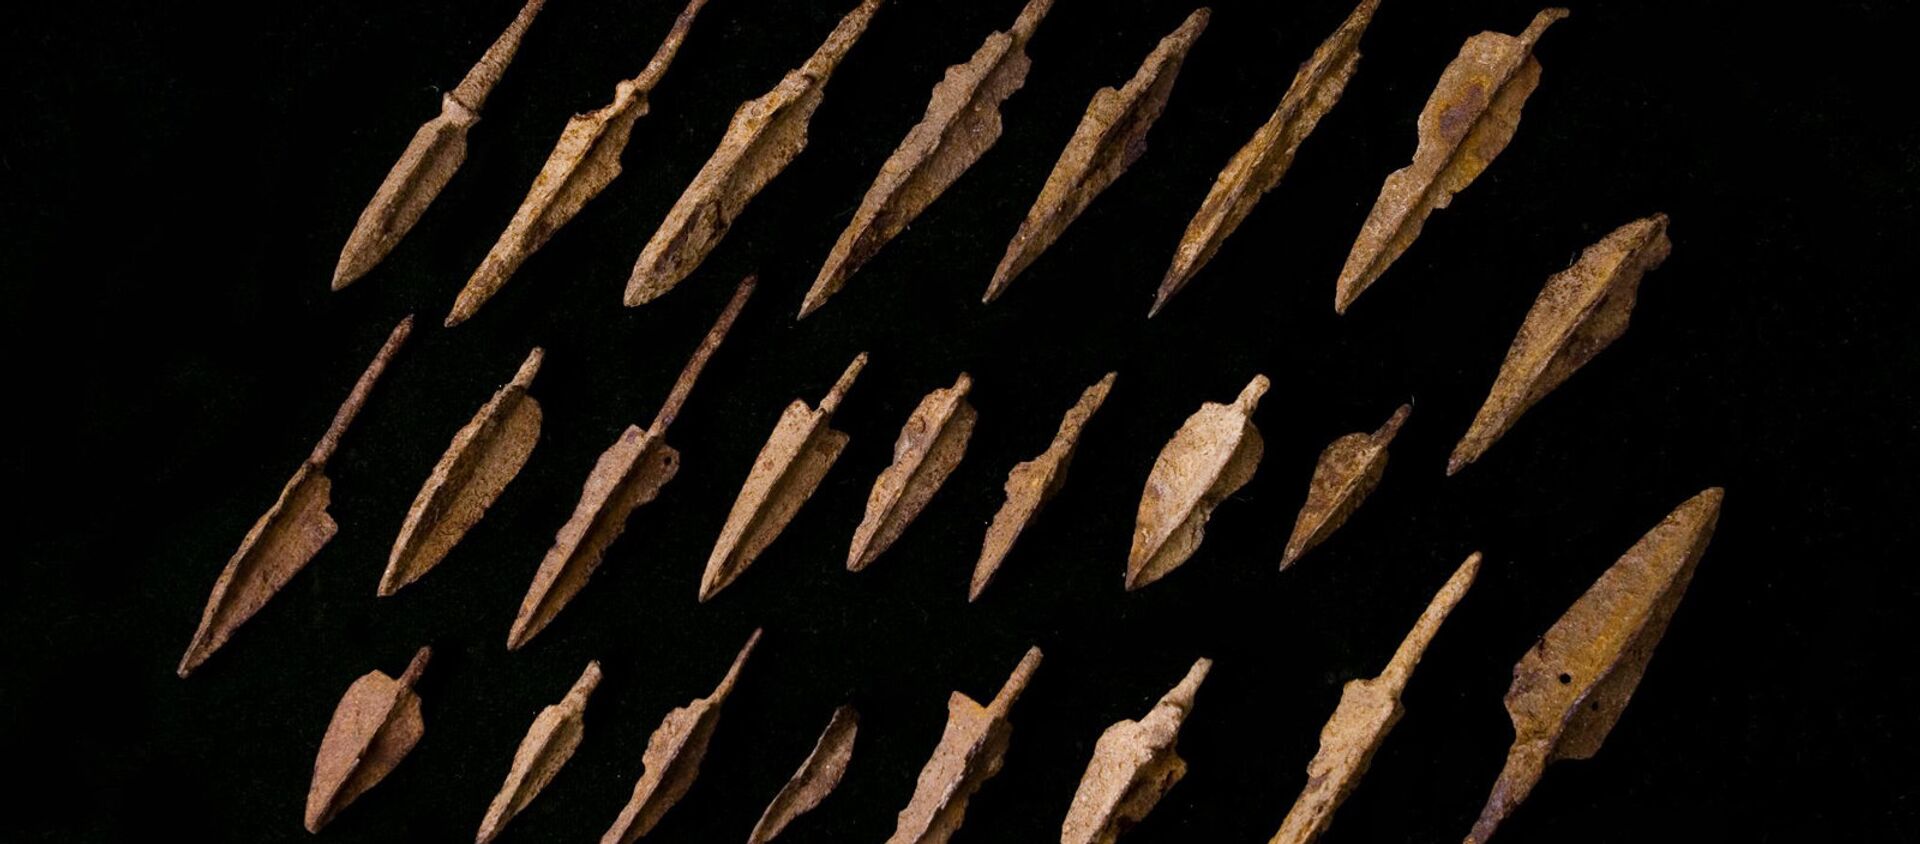 Трехперые наконечники стрел из коллекции Давида Симоняна - Sputnik Армения, 1920, 12.08.2021